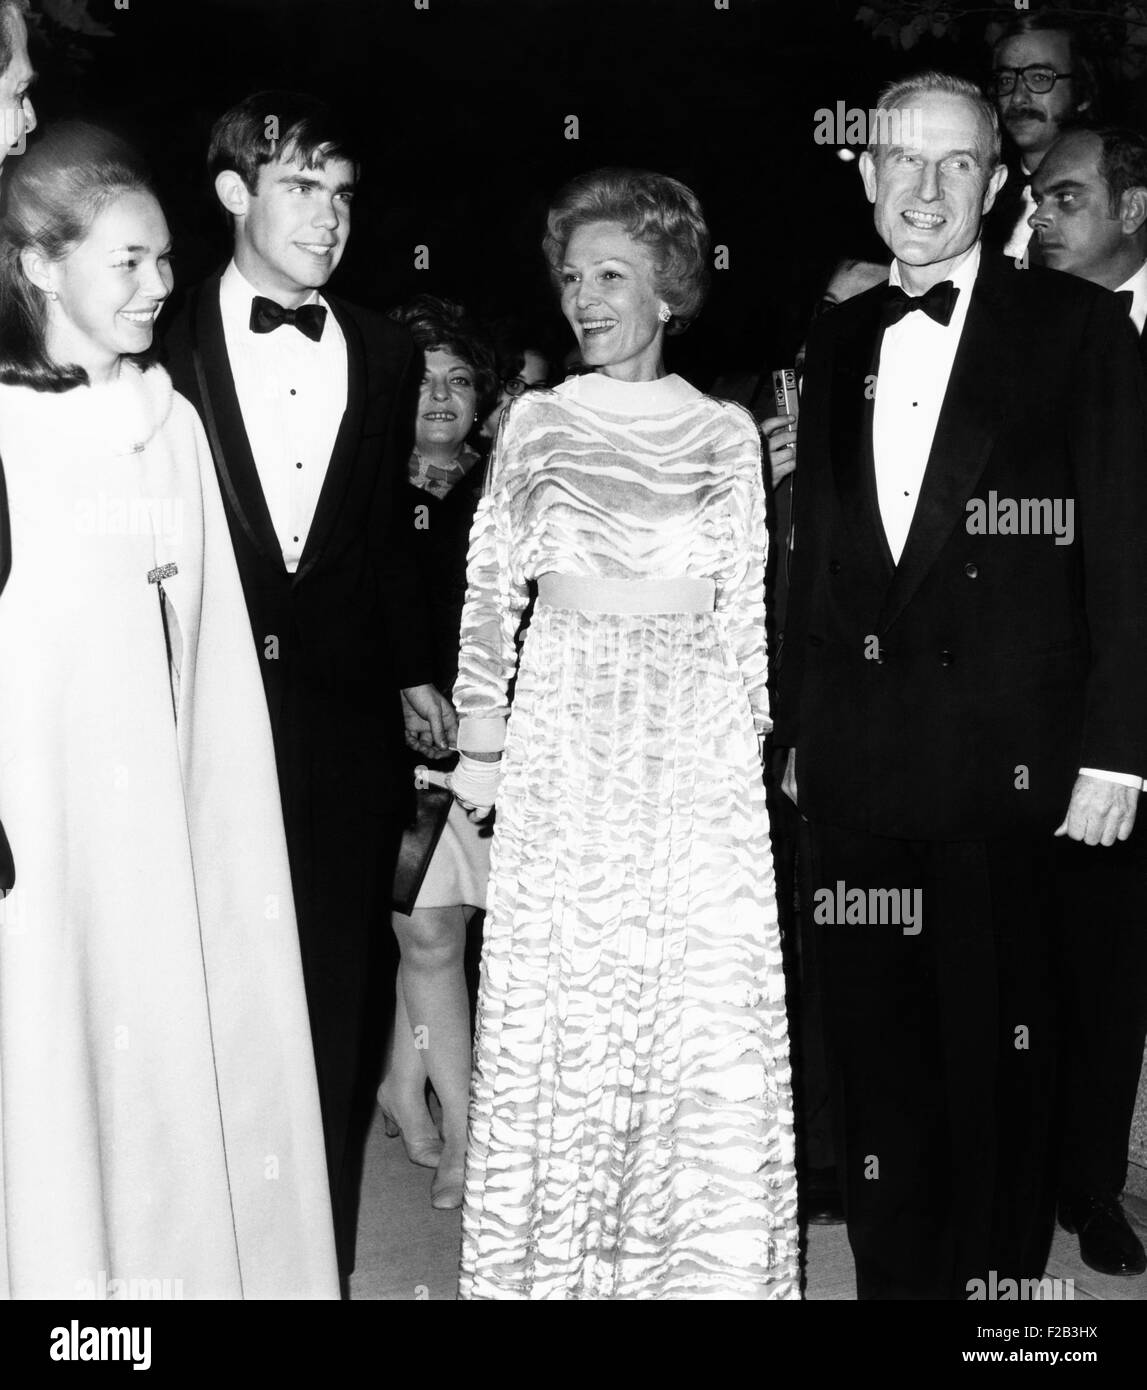 La Première Dame Pat Nixon et John D. Rockefeller III, à l'École Juilliard de musique nouvelle. Le 26 octobre 1969. Avec sa fille Julie et son mari David Eisenhower, ils marquent l'achèvement des derniers bâtiments du Lincoln Center complexe. - (CSU 2015 6 198) Banque D'Images